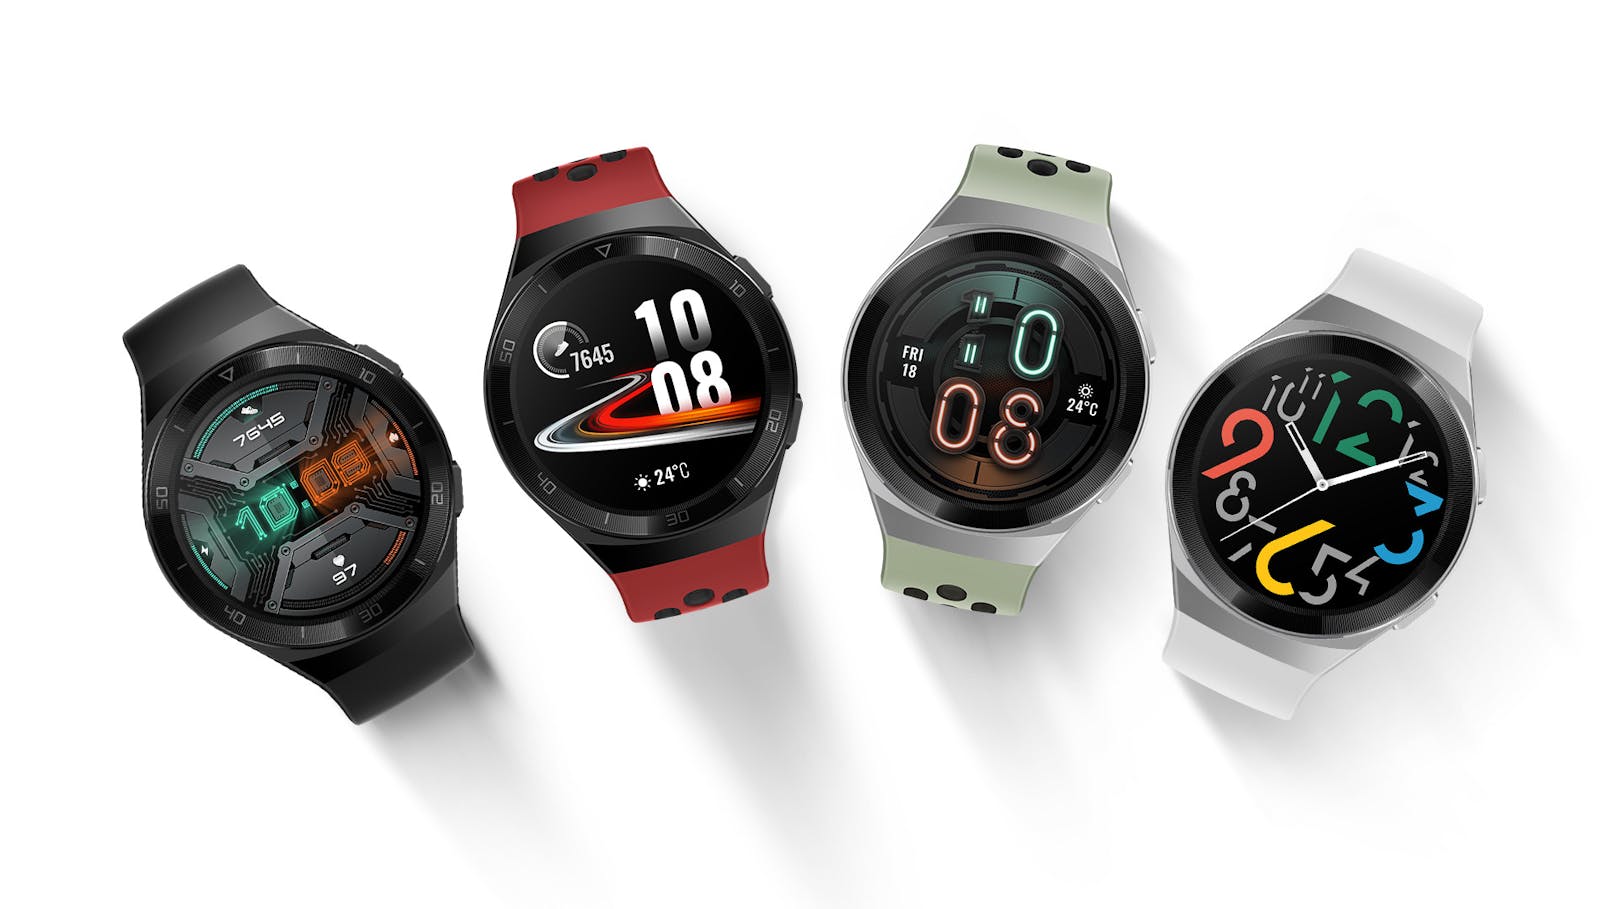 Die Huawei Watch GT 2e gibt es als Unisex-Modell mit neuen Design, das sich offenbar an eine jüngere Zielgruppe richtet. Wie die Vorgänger soll die Watch zwei Wochen Akkulaufzeit bieten.